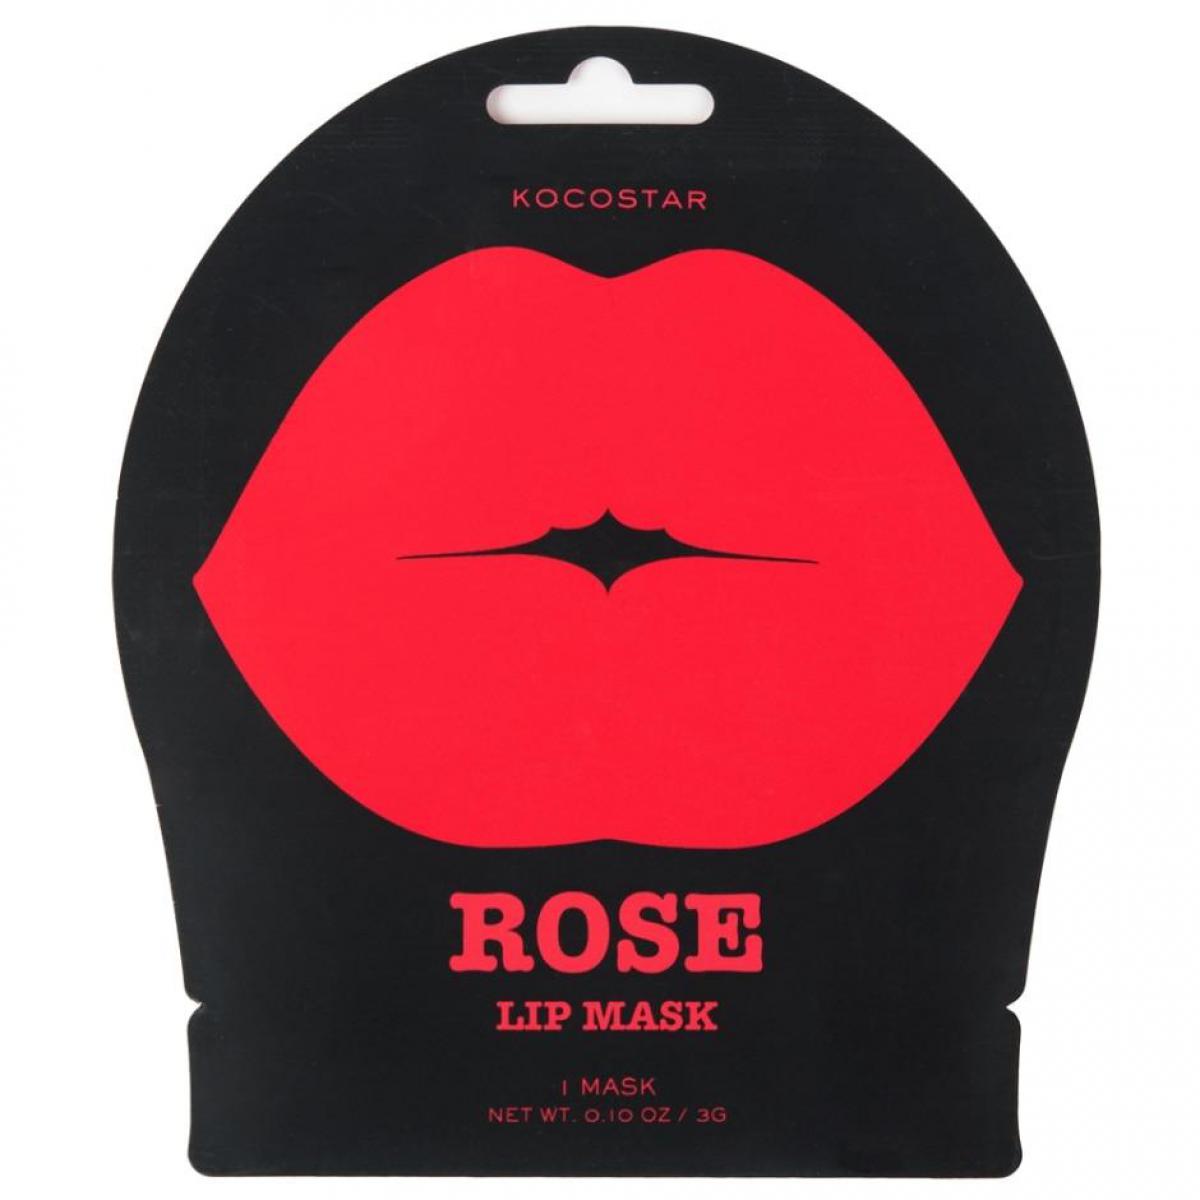 ماسک لب  - rose lip mask